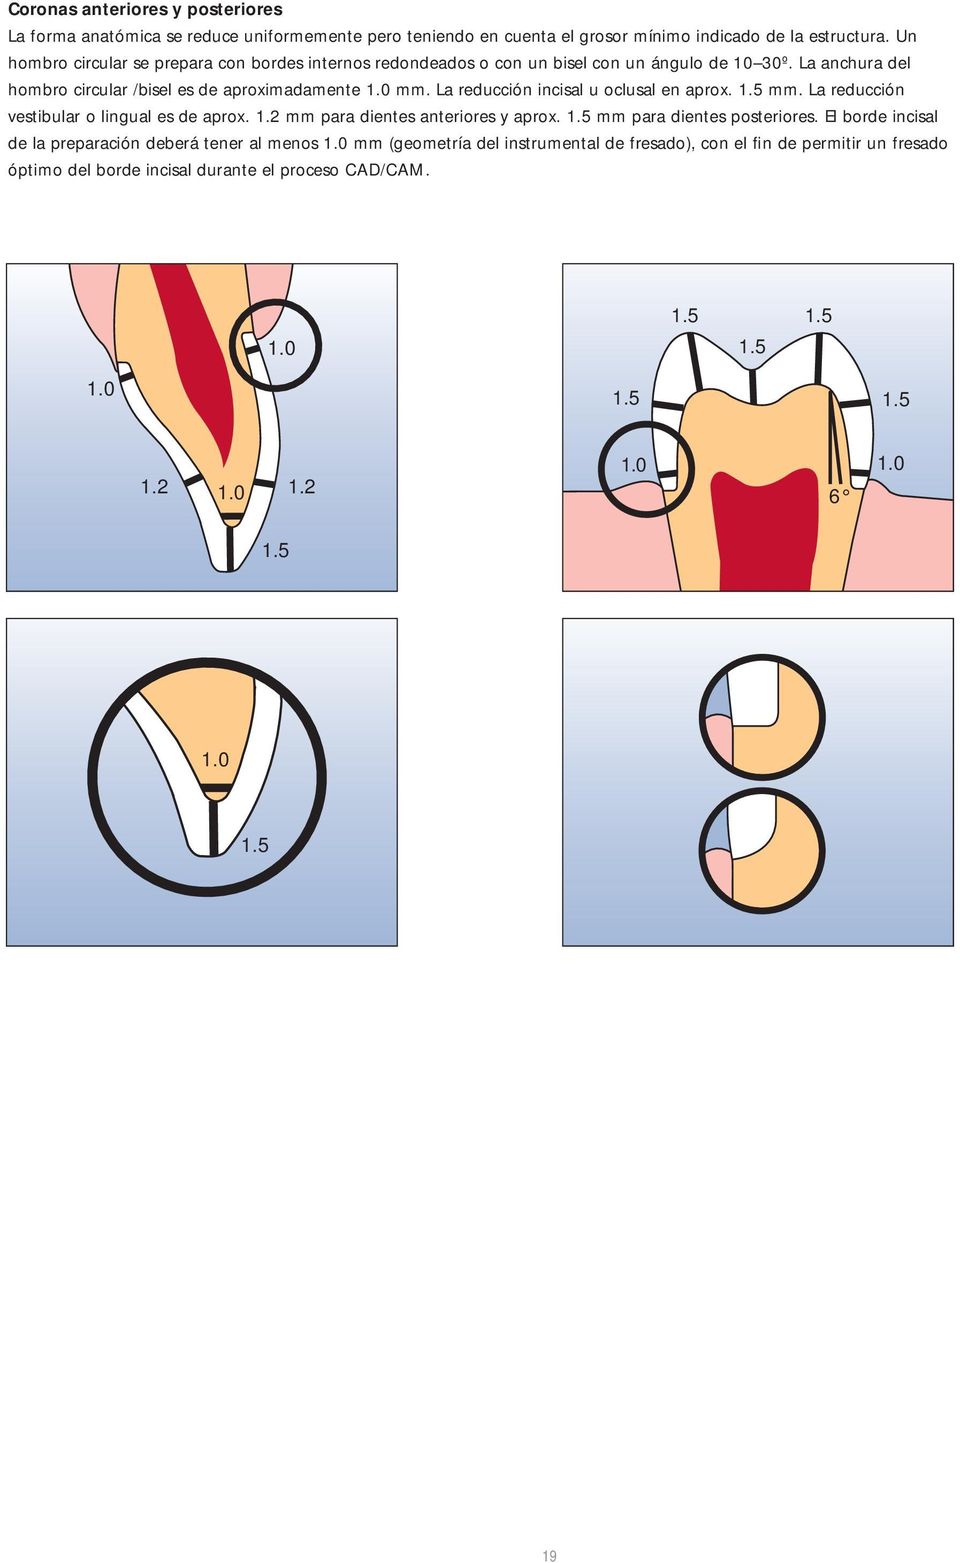 La reducción incisal u oclusal en aprox. 1.5 mm. La reducción vestibular o lingual es de aprox. 1.2 mm para dientes anteriores y aprox. 1.5 mm para dientes posteriores.